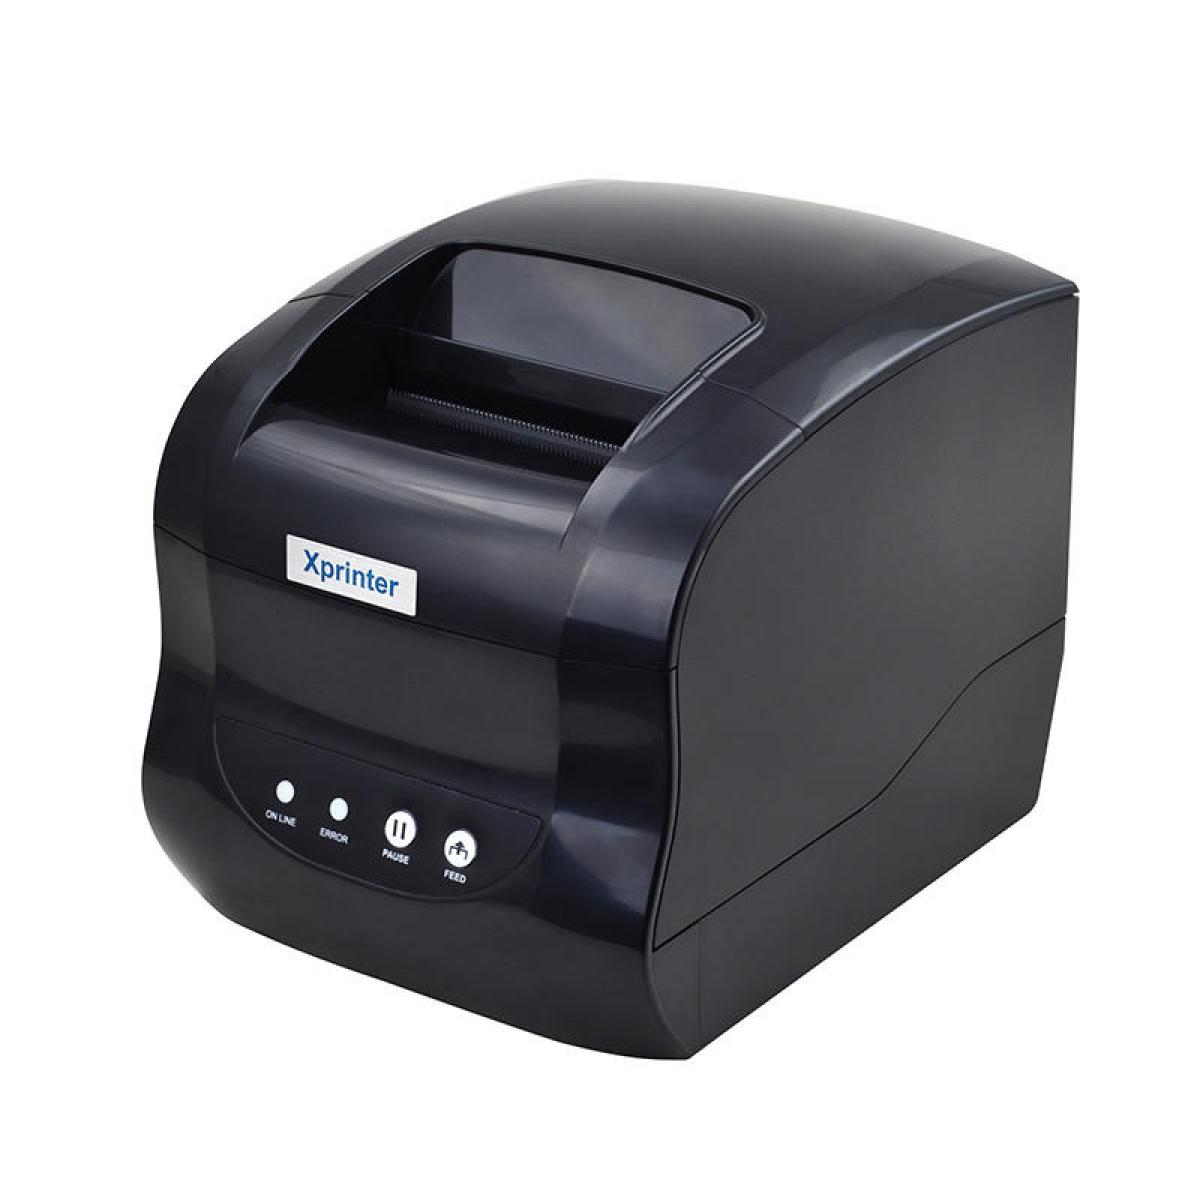 Xprinter XP-318B Thermal Receipt & Barcode Printer